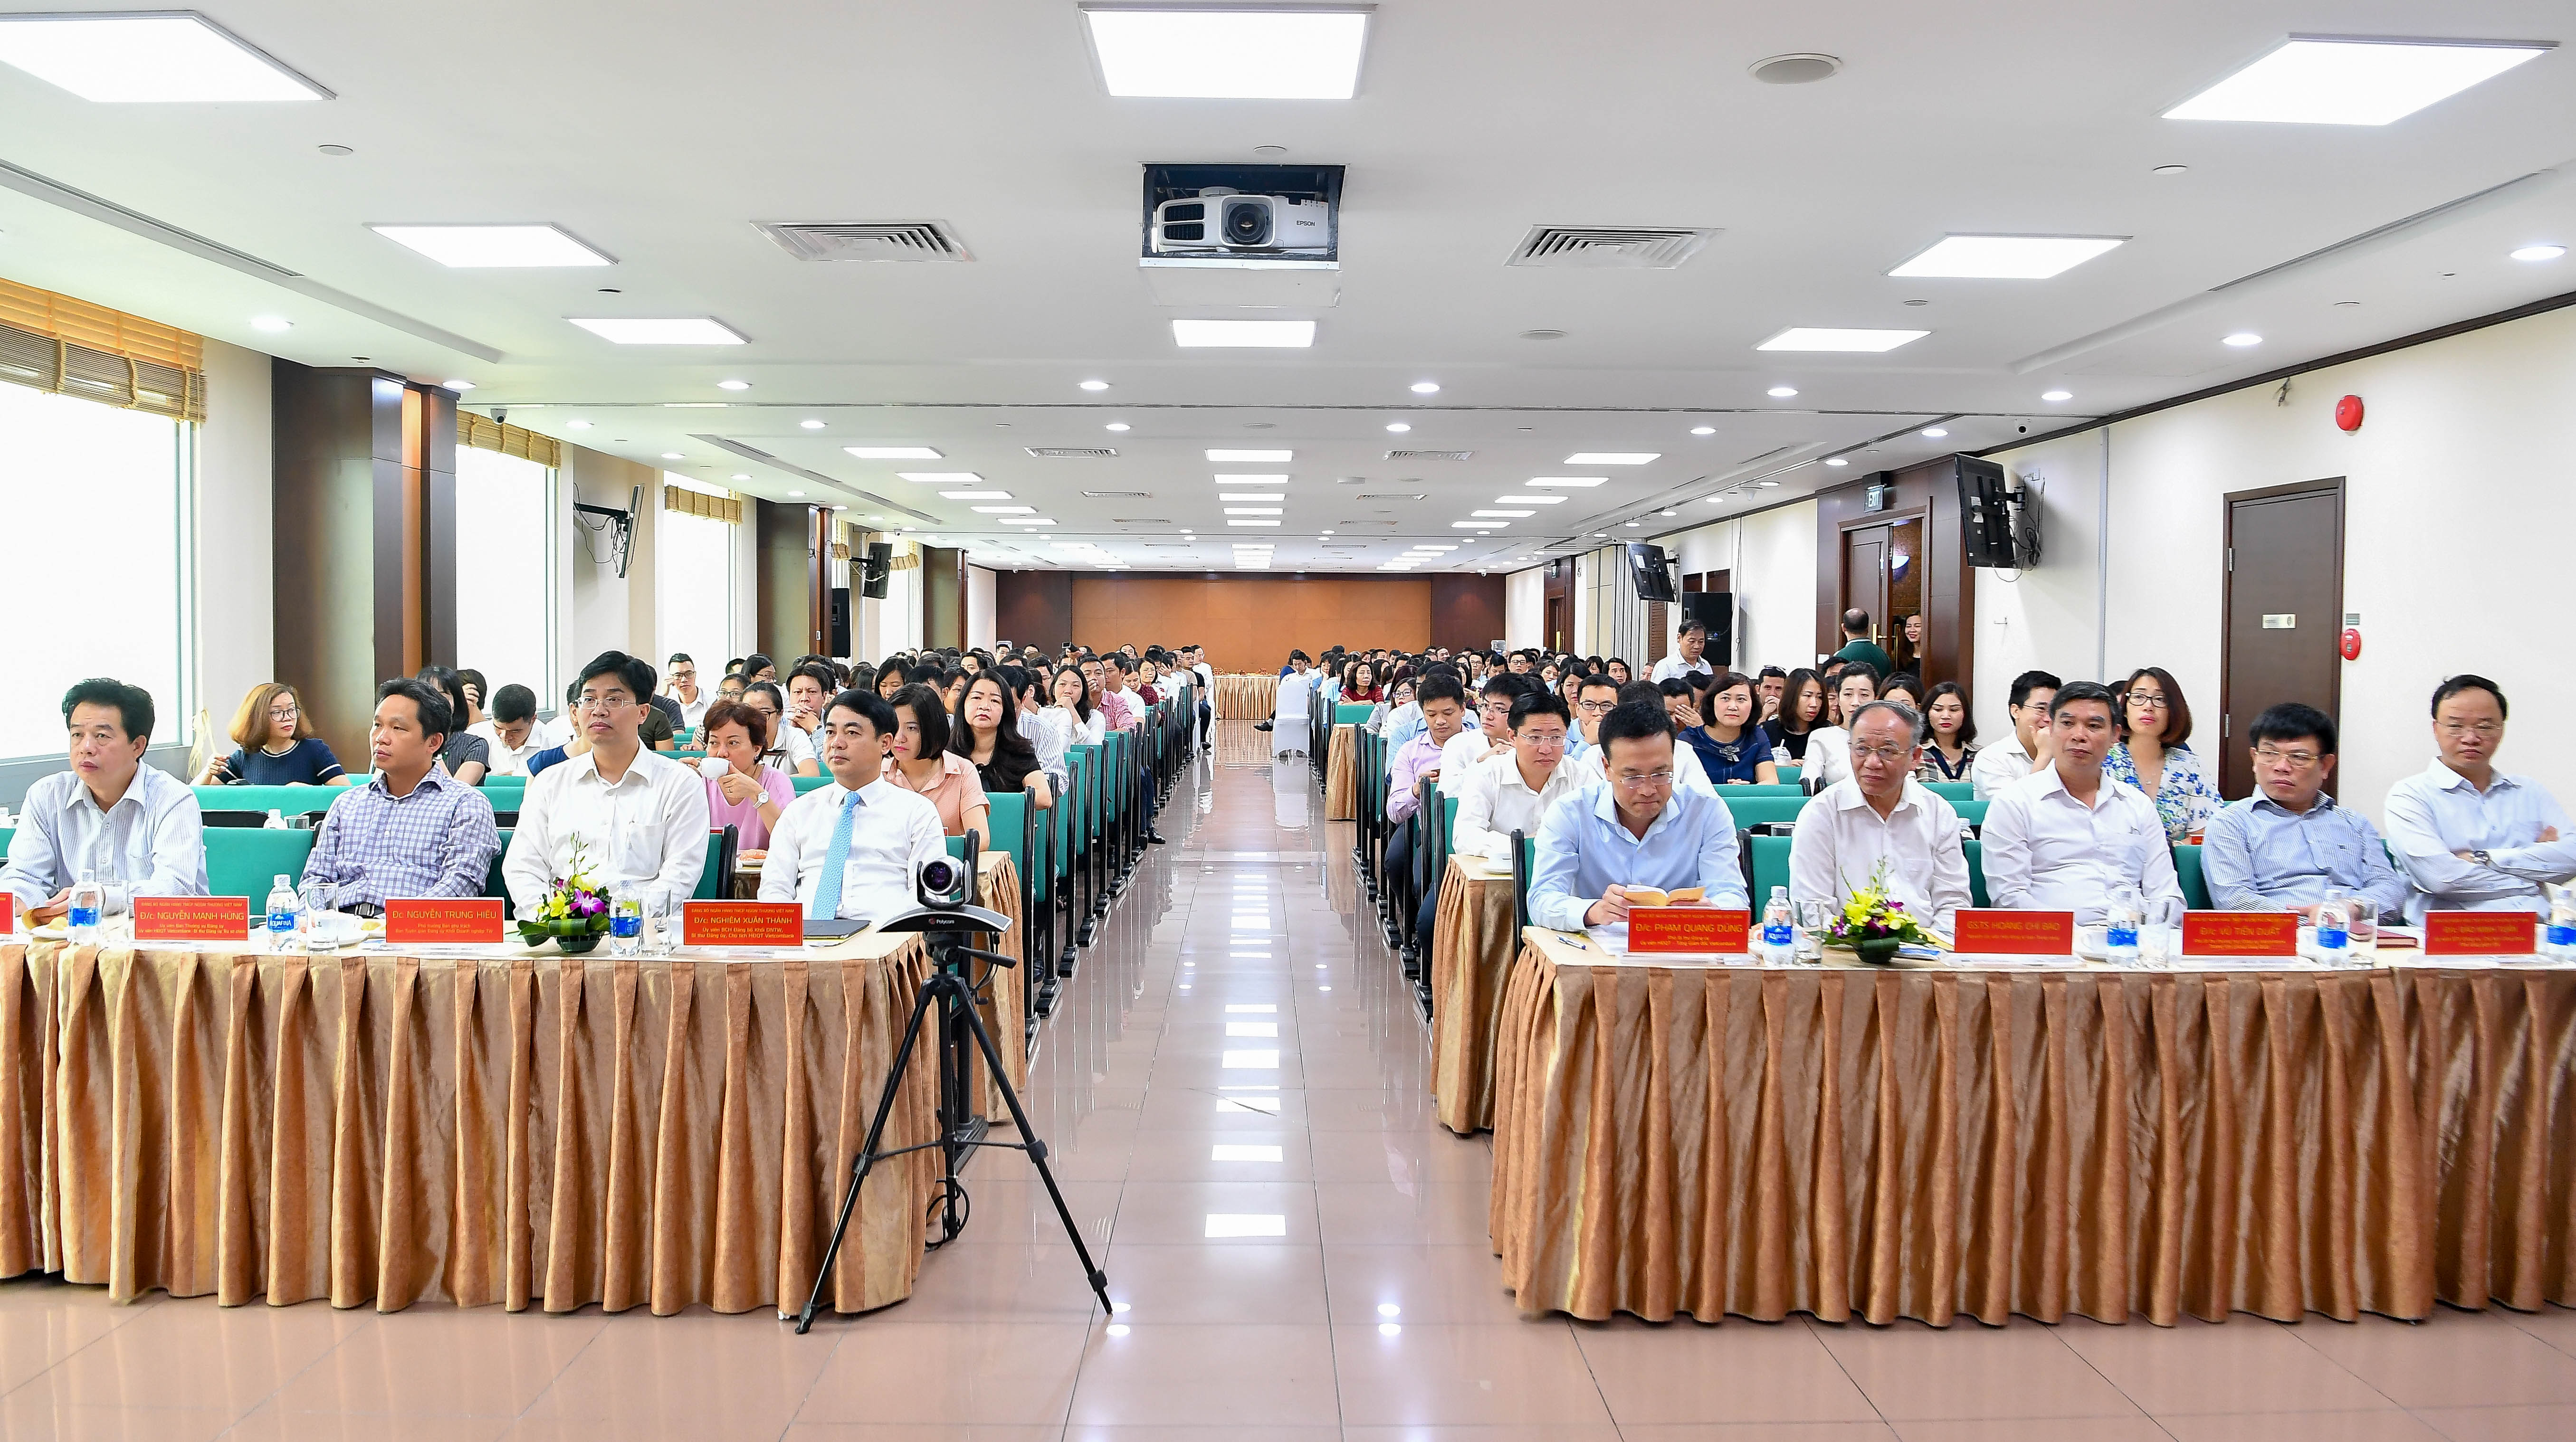 Đảng ủy Vietcombank tổ chức Hội nghị học tập Chỉ thị 05–CT/TW chuyên đề năm 2018